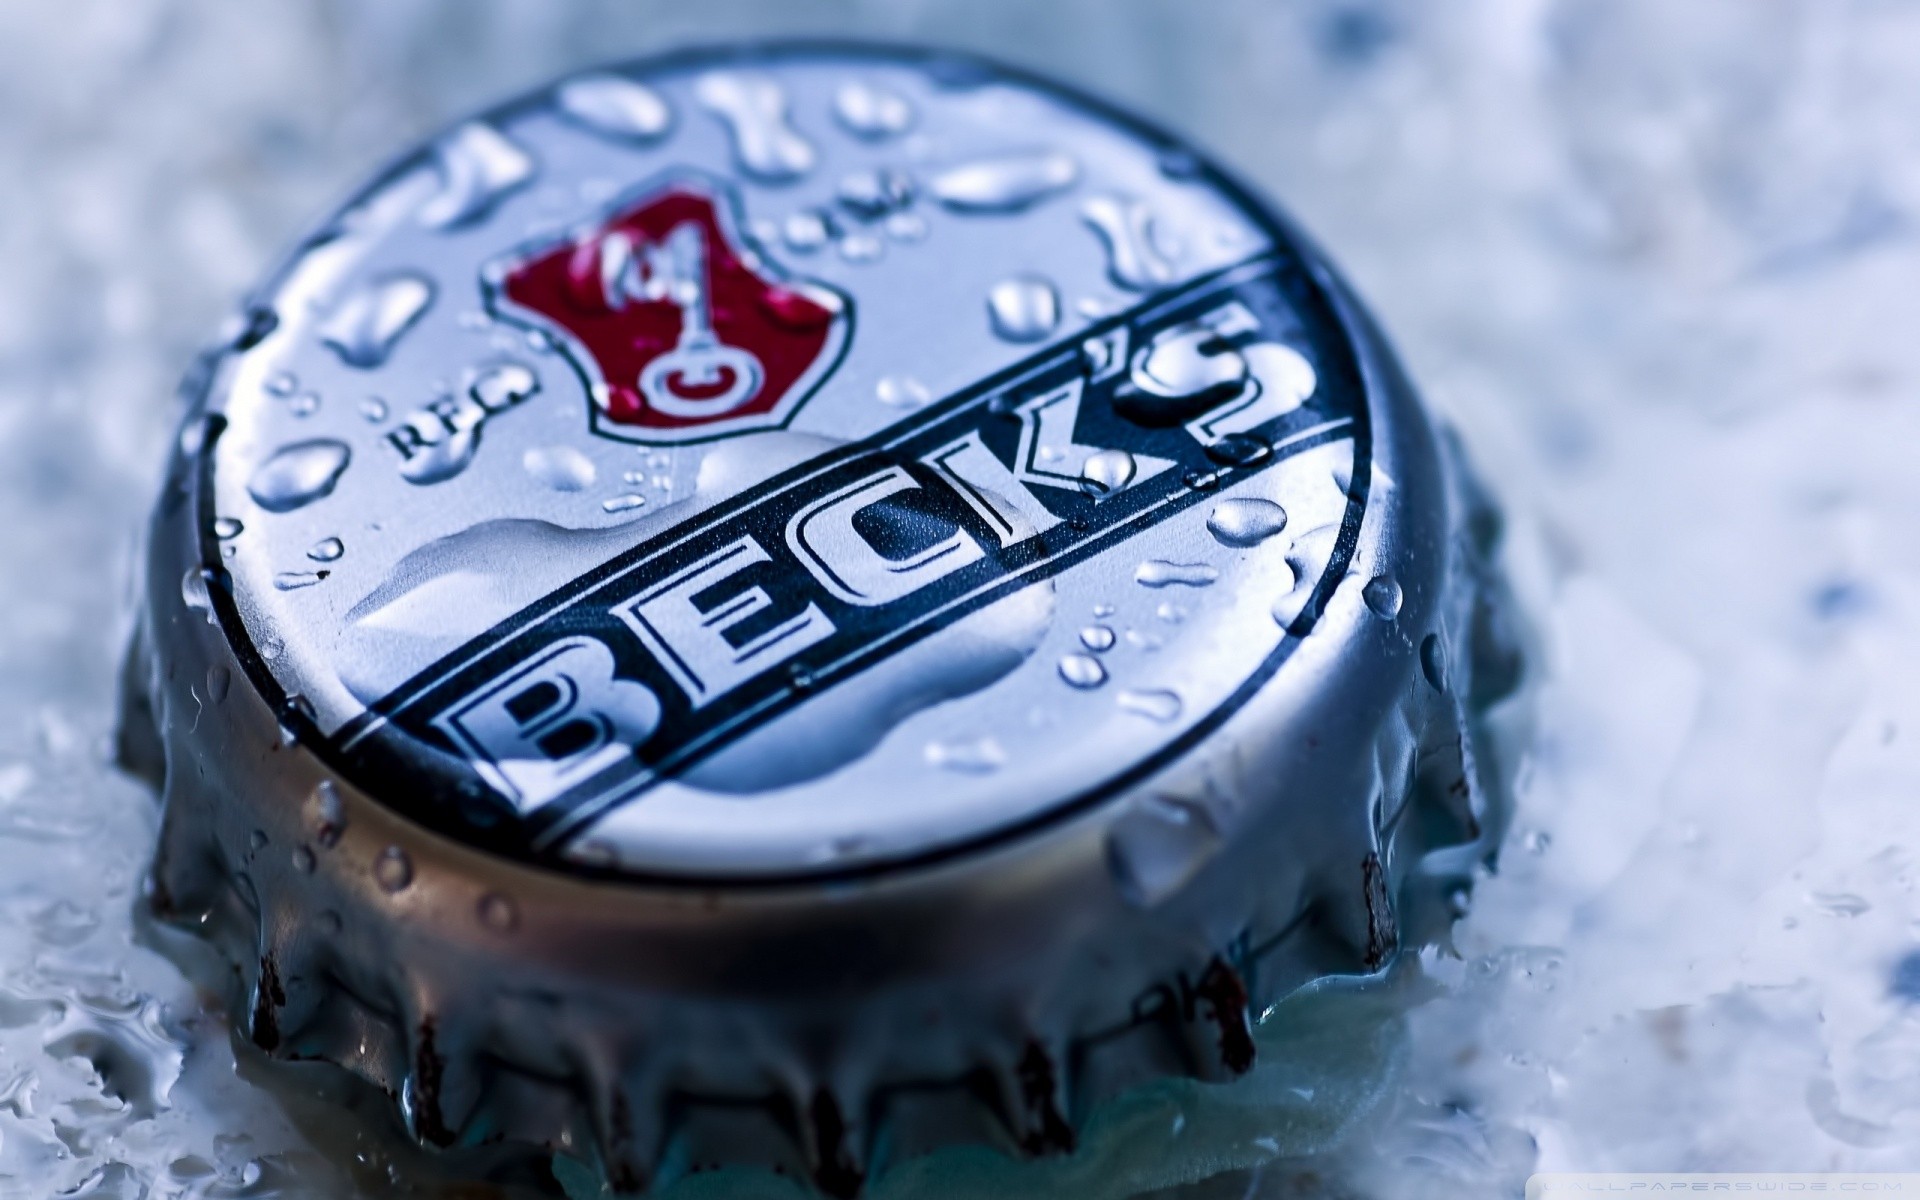 General 1920x1200 logo metal water drops Beck's (Beer) brand closeup